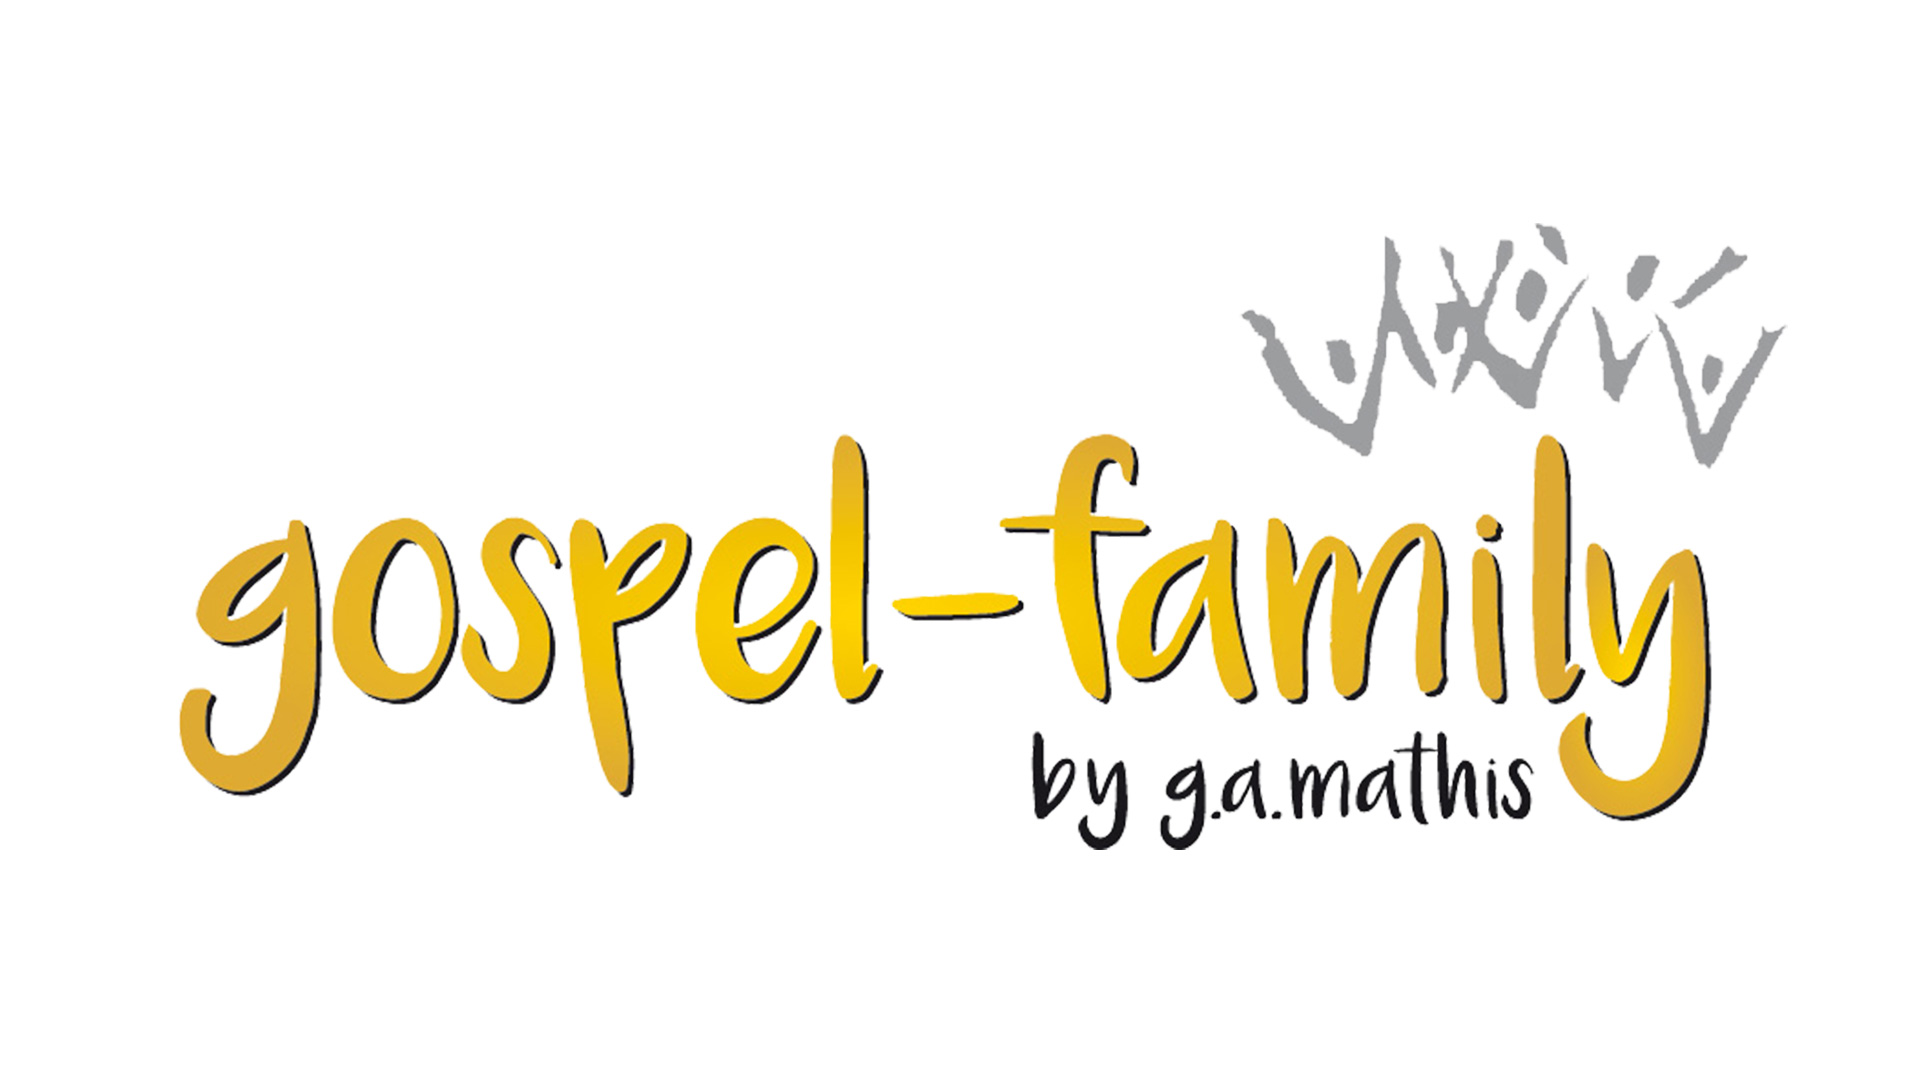 Gospel Family